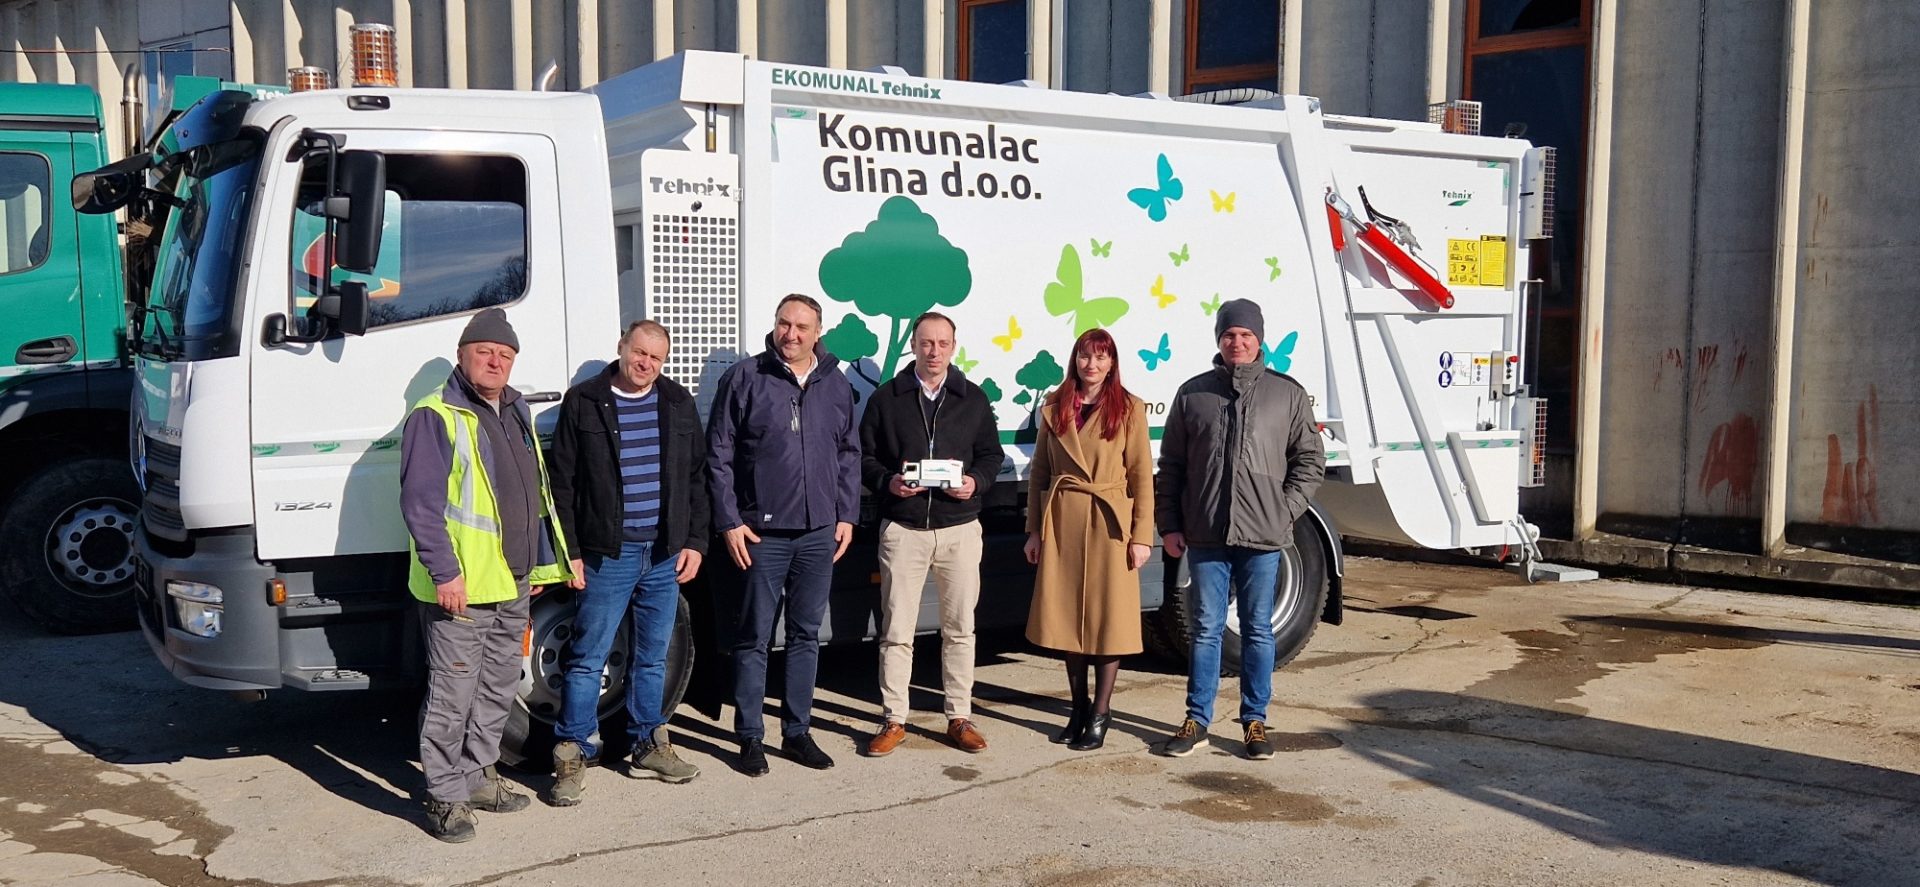 Municipal Company Komunalac Glina Acquired a New Vehicle